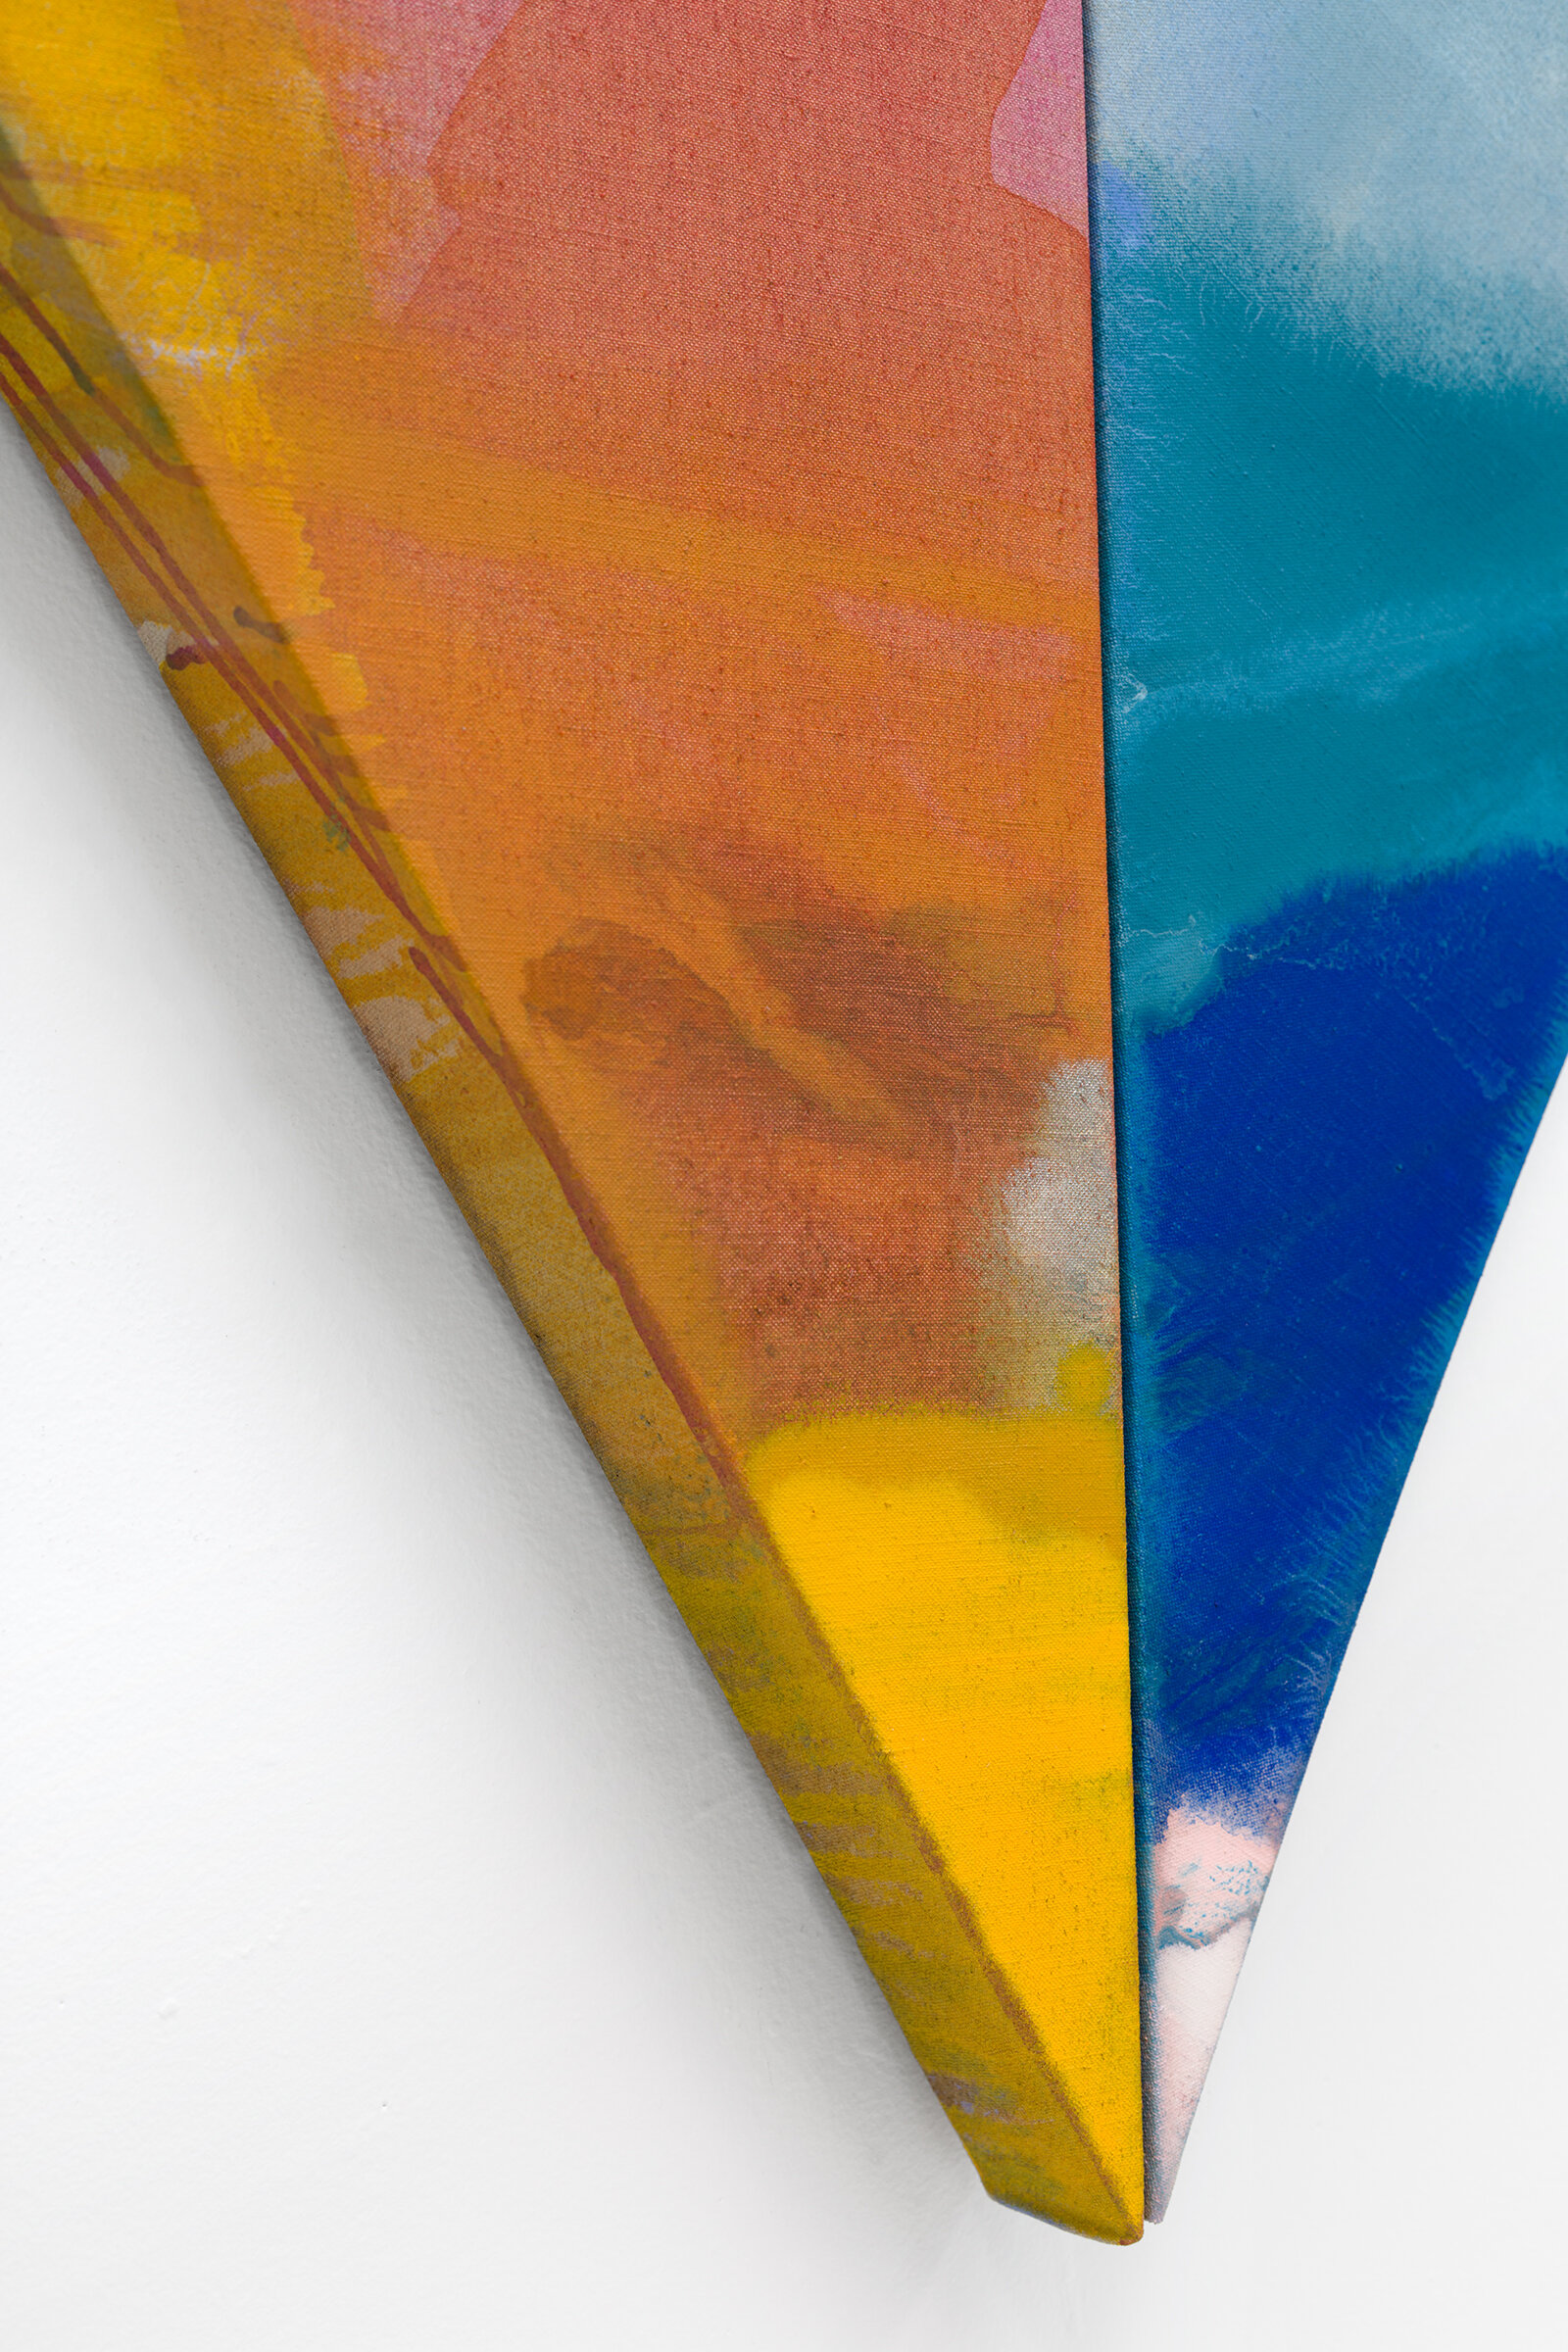  PAMELA JORDEN (detail)  Pine , 2019 oil and acrylic on linen, 72.62” x 76.25” 